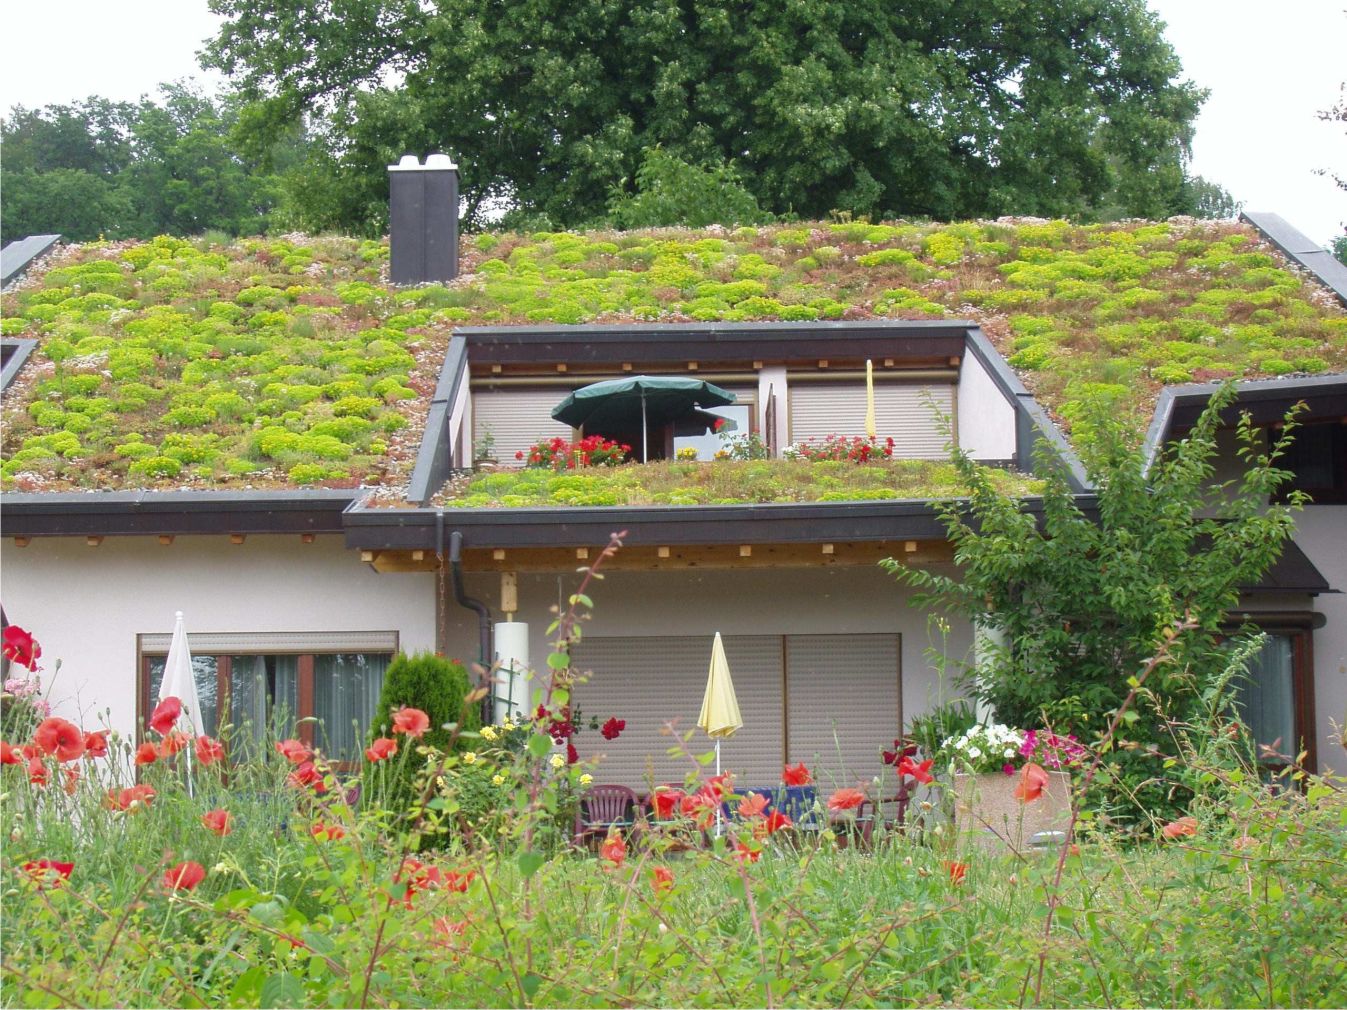 ... do enodružinske stanovanjske hiše z zeleno streho. Ozelenitev je med ostalim tudi učinkovita toplotna izolacija.
